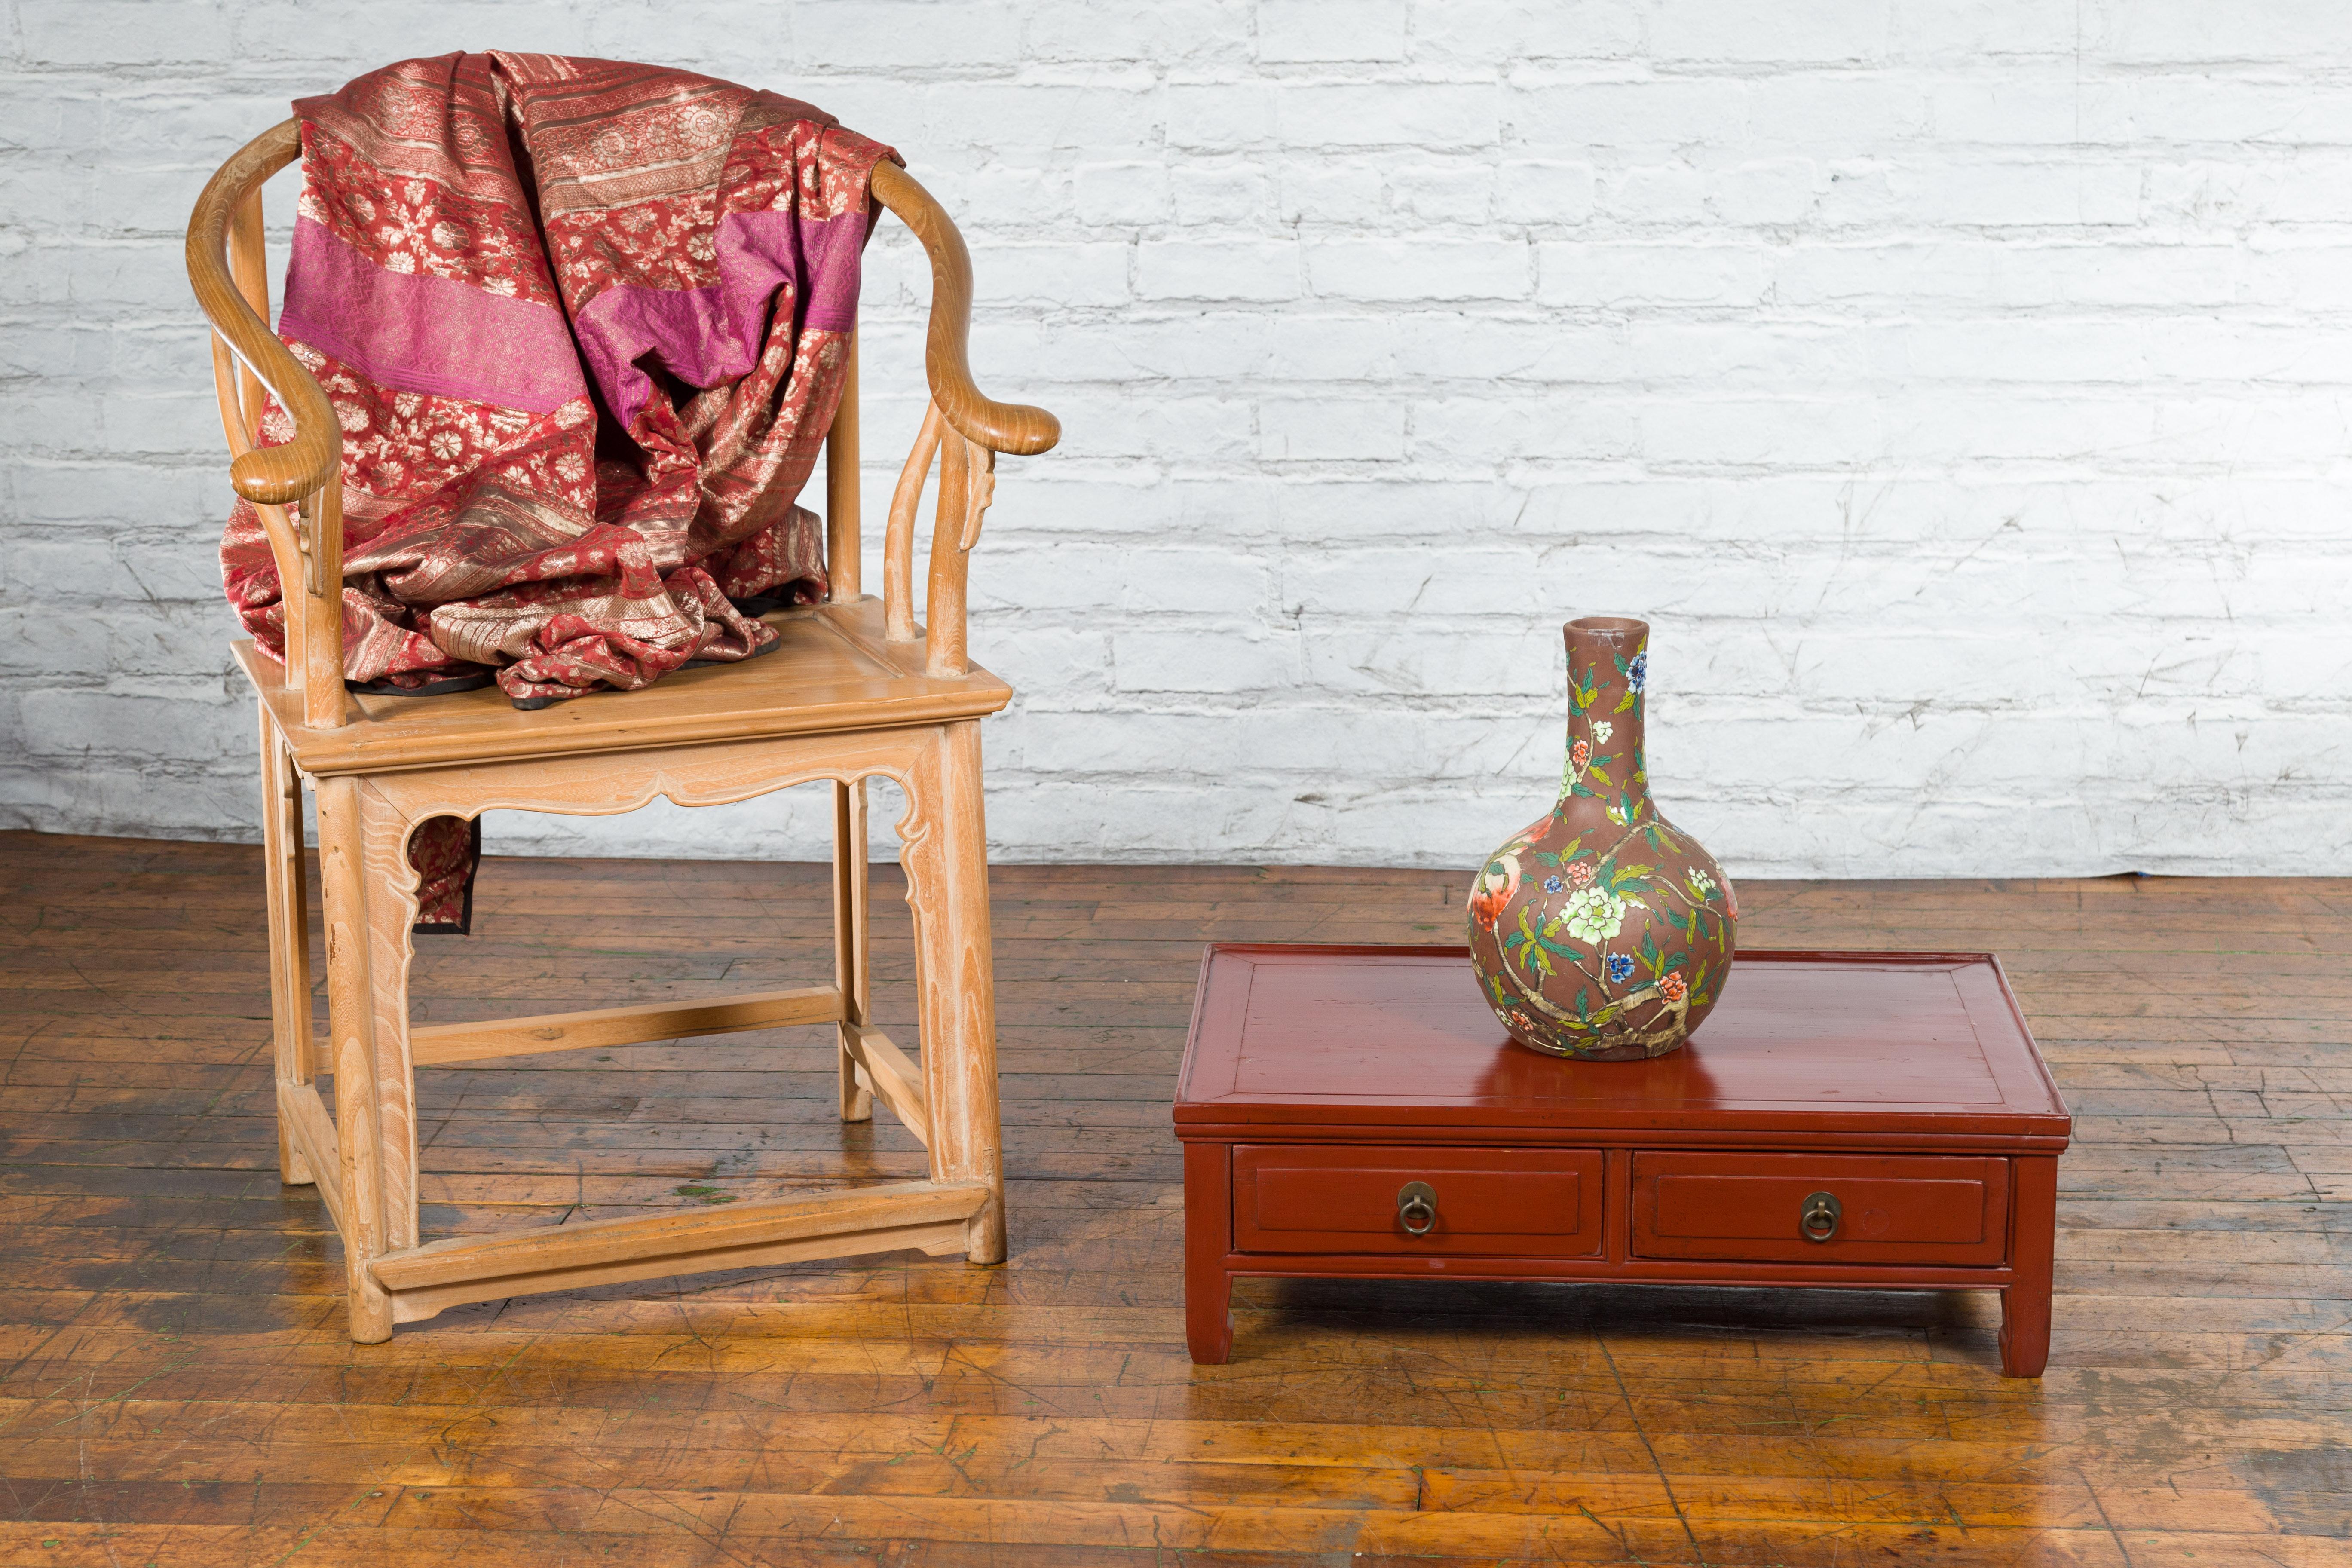 Table basse kang en laque rouge, d'époque dynastie Qing, du 19ème siècle, avec deux tiroirs frontaux et des poignées rondes en laiton. Créée en Chine sous la dynastie Qing, cette table basse kang présente un plateau rectangulaire surmontant deux